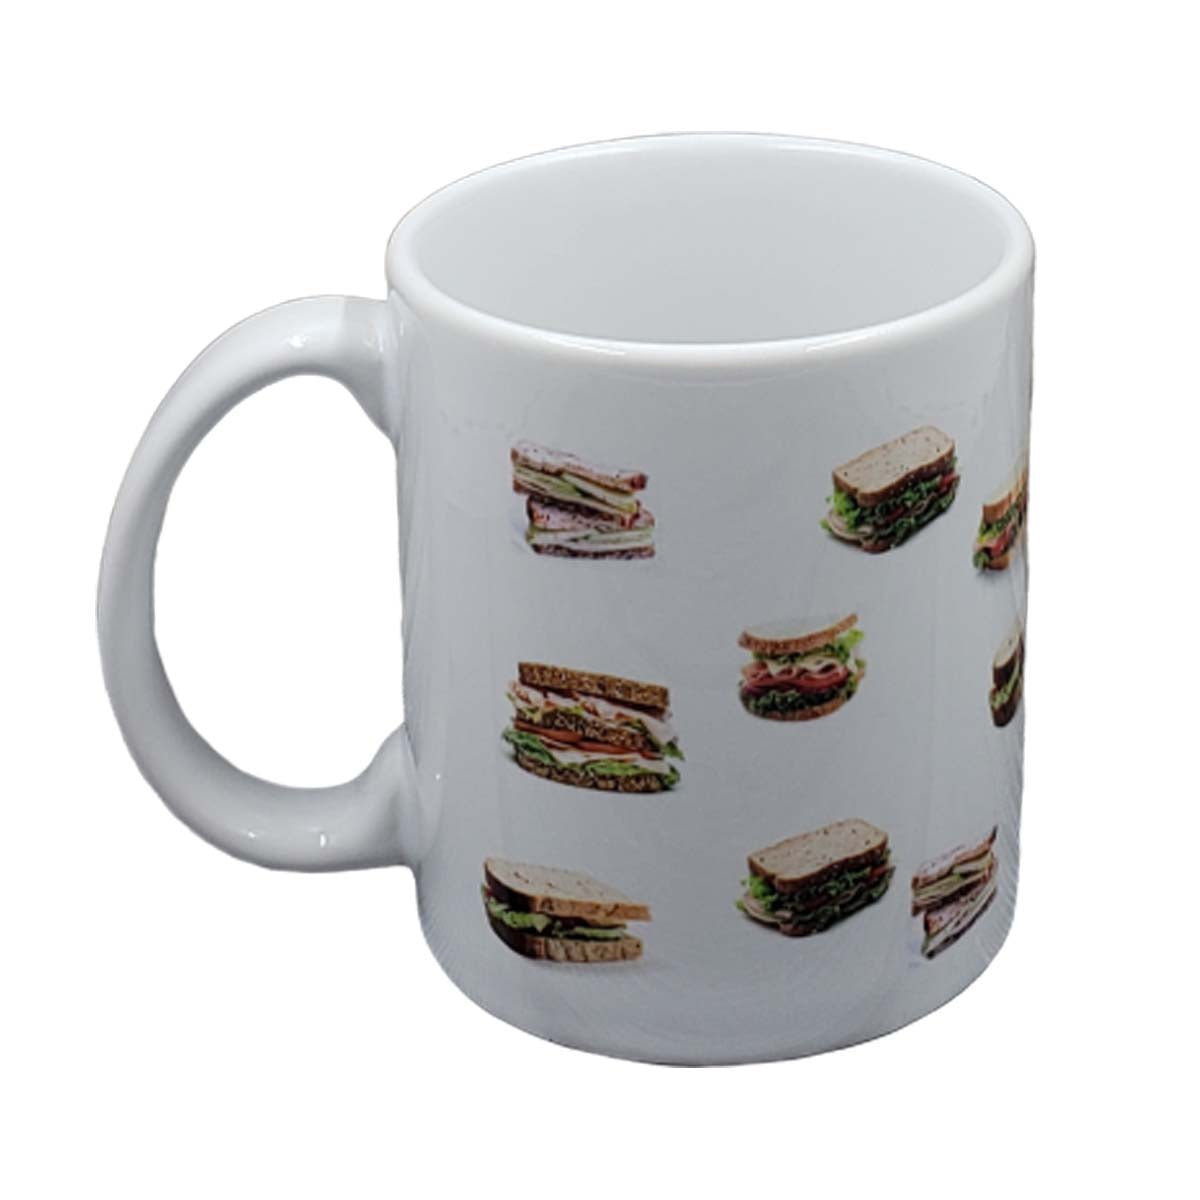 No 'M' in Sandwich Mug